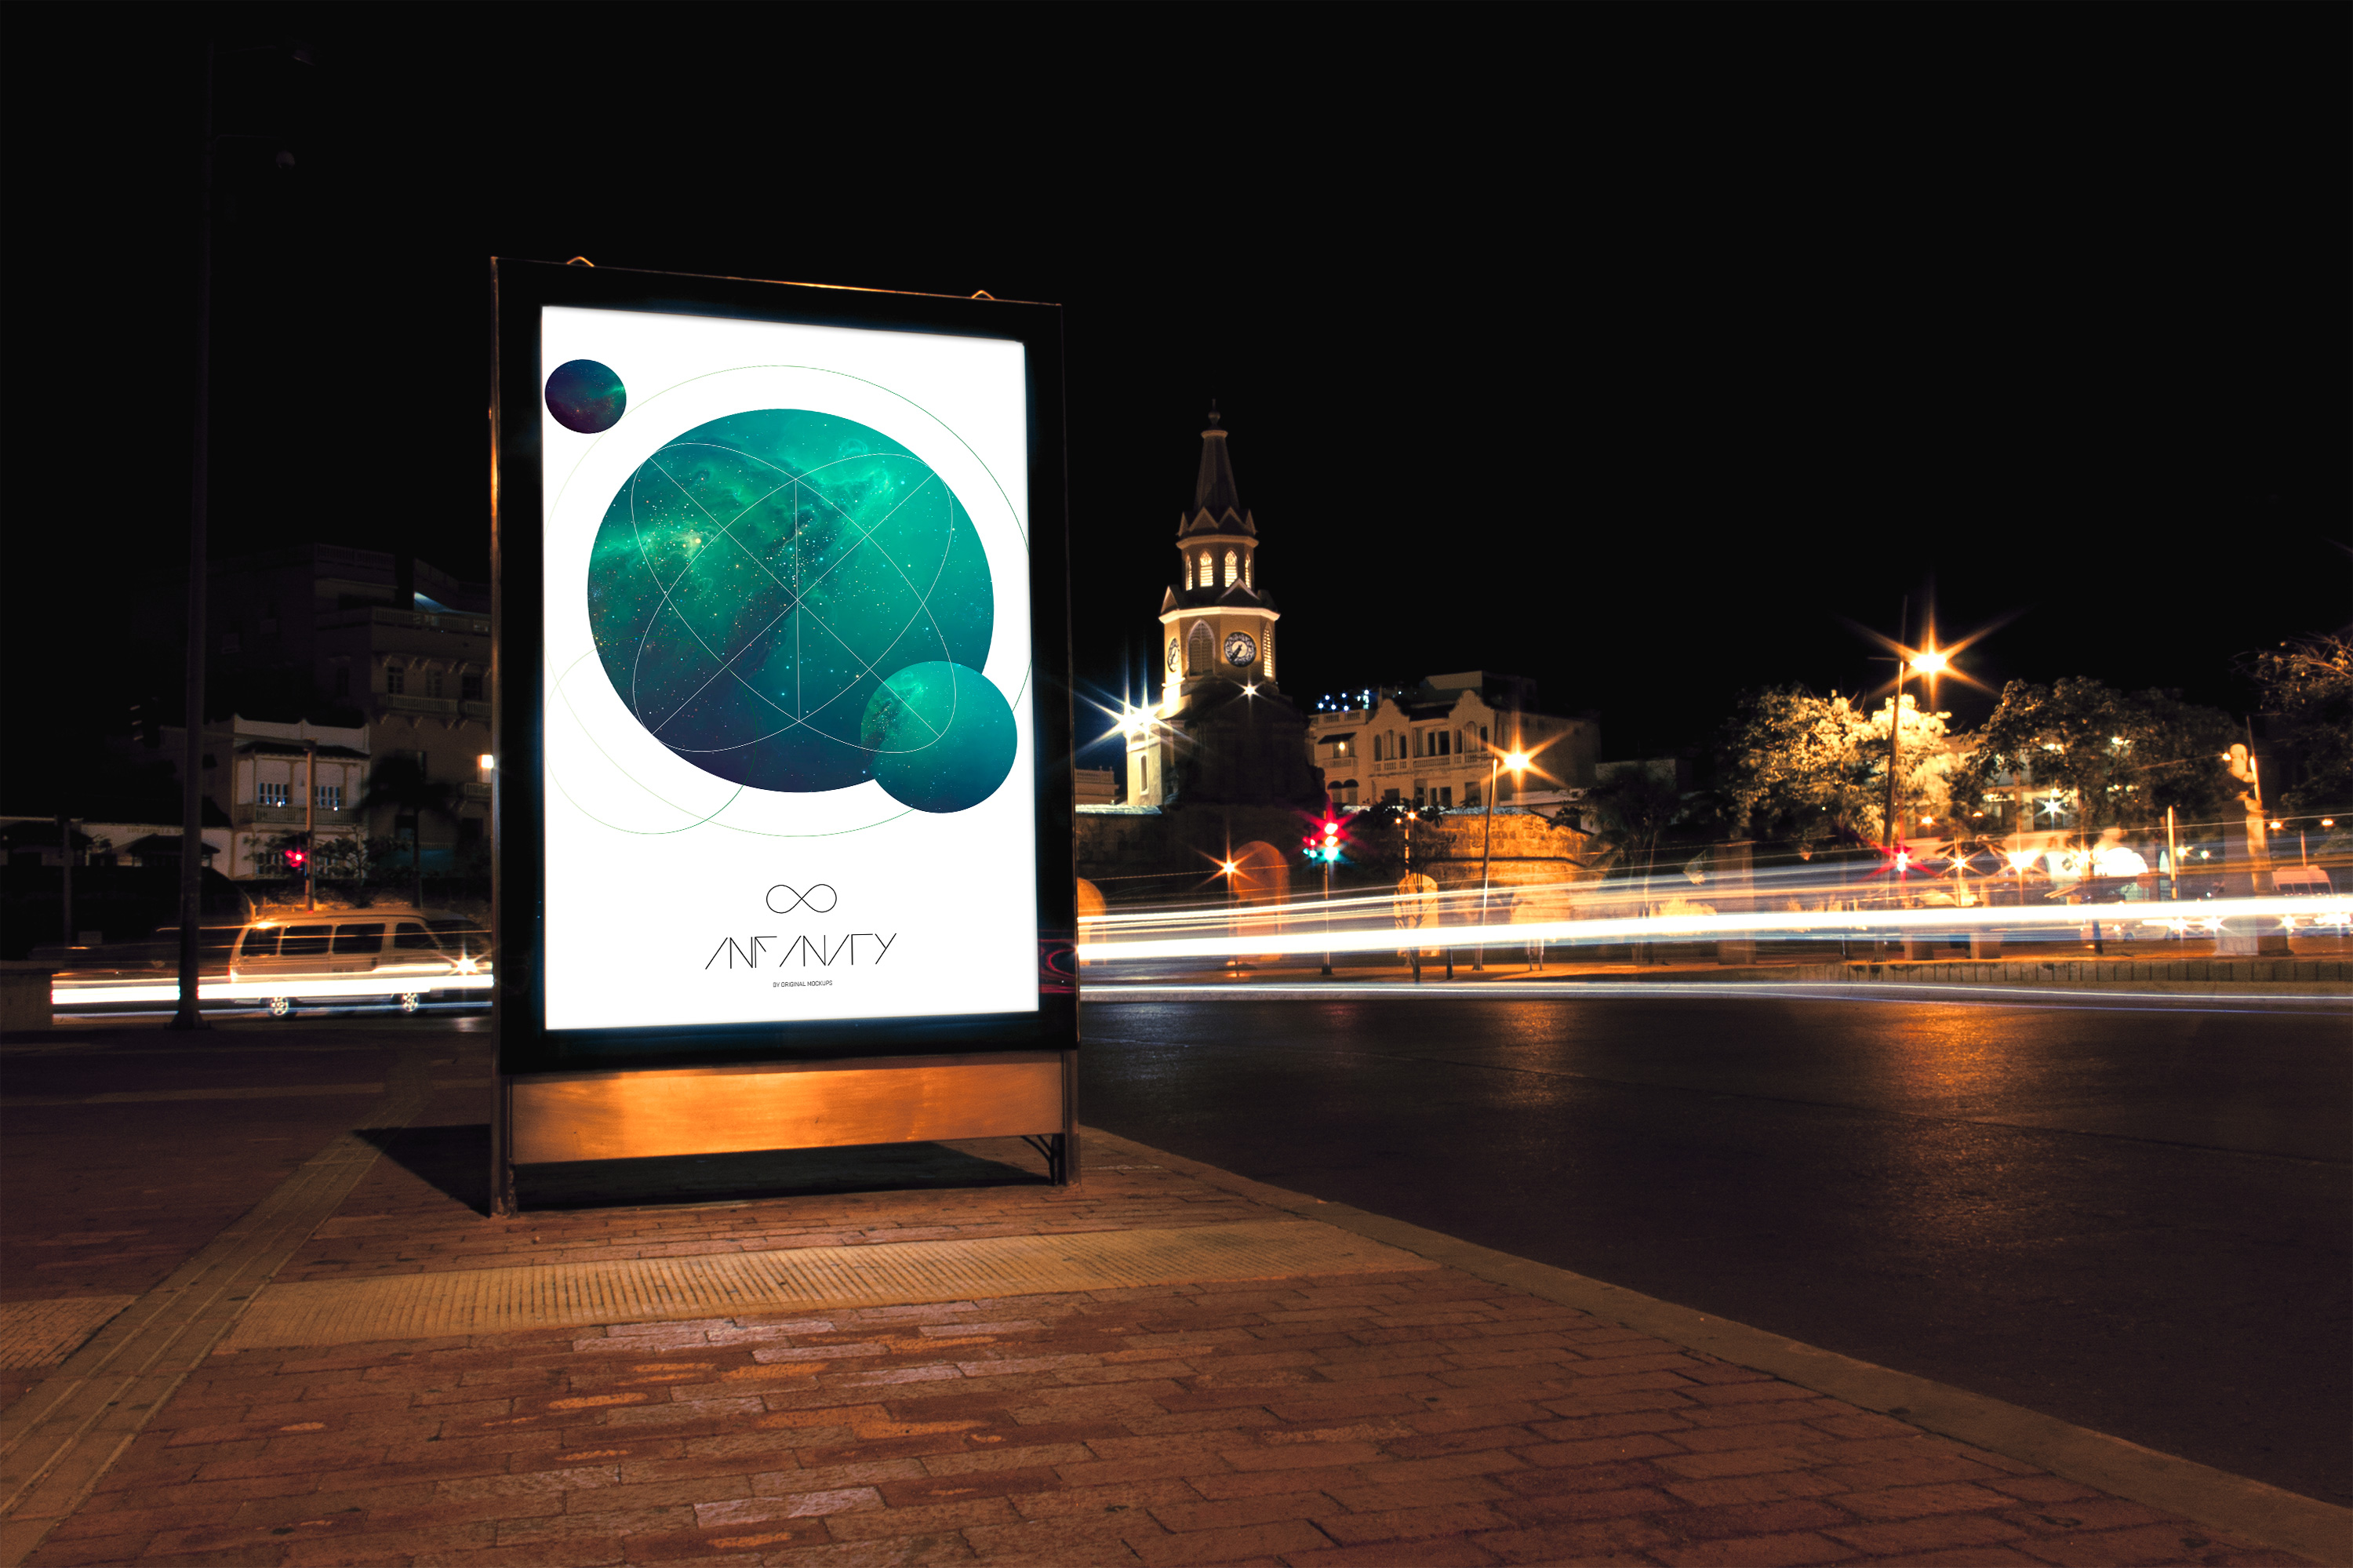 公路广告牌灯箱广告设计图预览样机模板02 Mupi Billboard Mockup 2插图